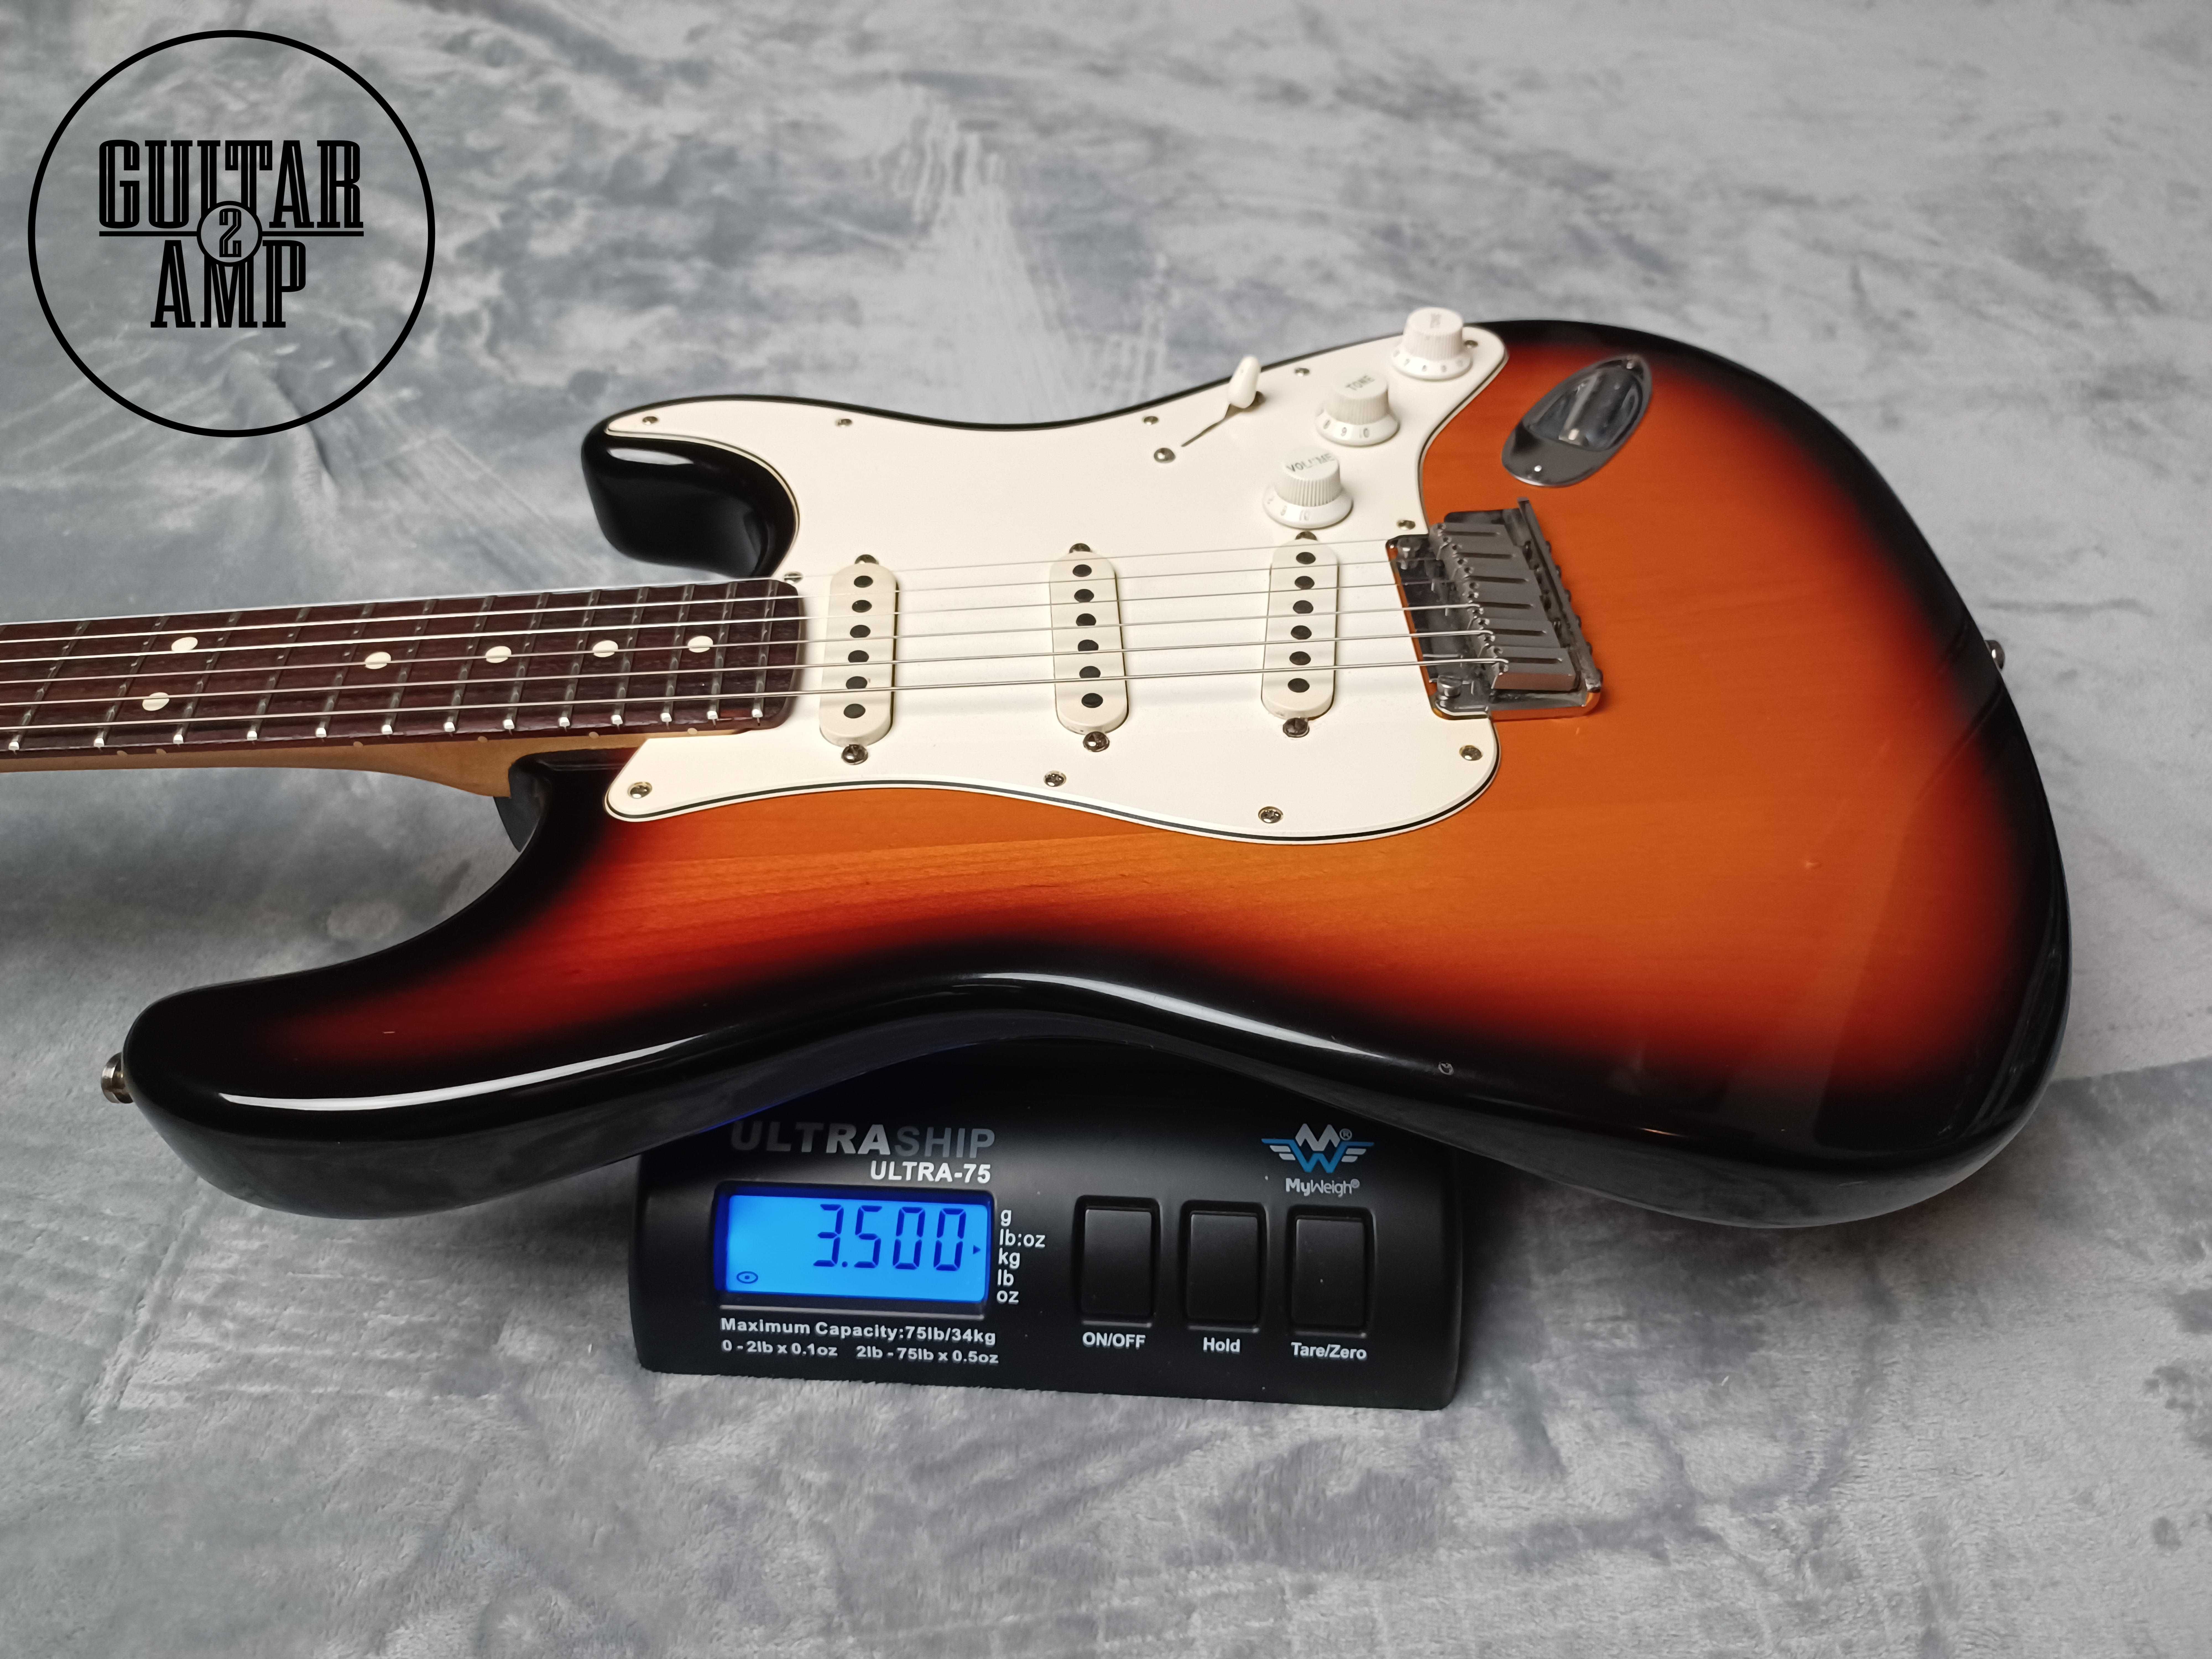 1997 Fender American Standard Stratocaster Sunburst